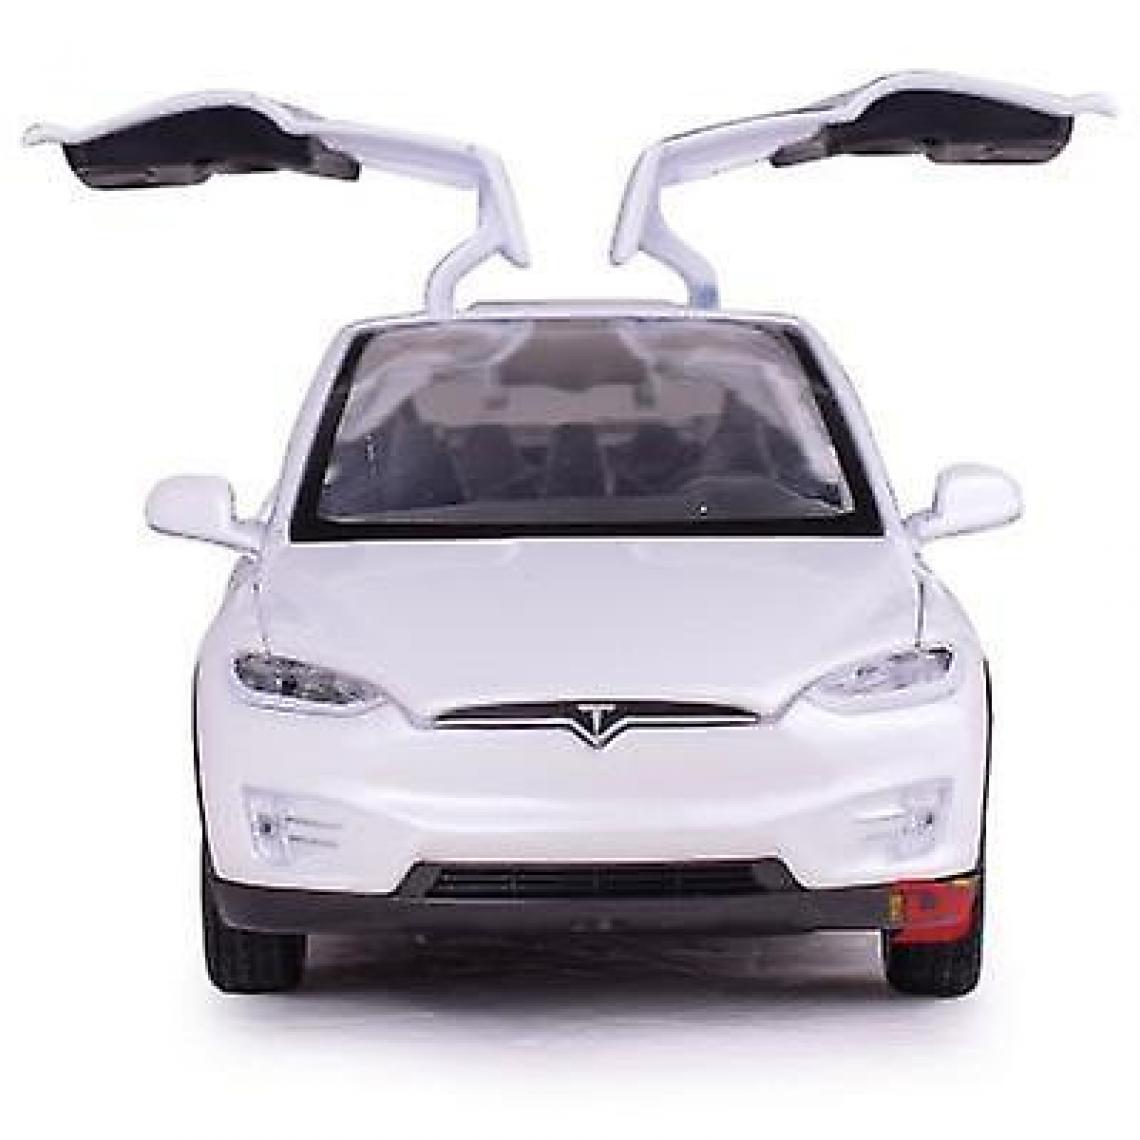 Universal - Un modèle de voiture en alliage à six portes, un modèle Tesla X avec des lumières simulées et des jouets musicaux pour les enfants.(blanche) - Voitures